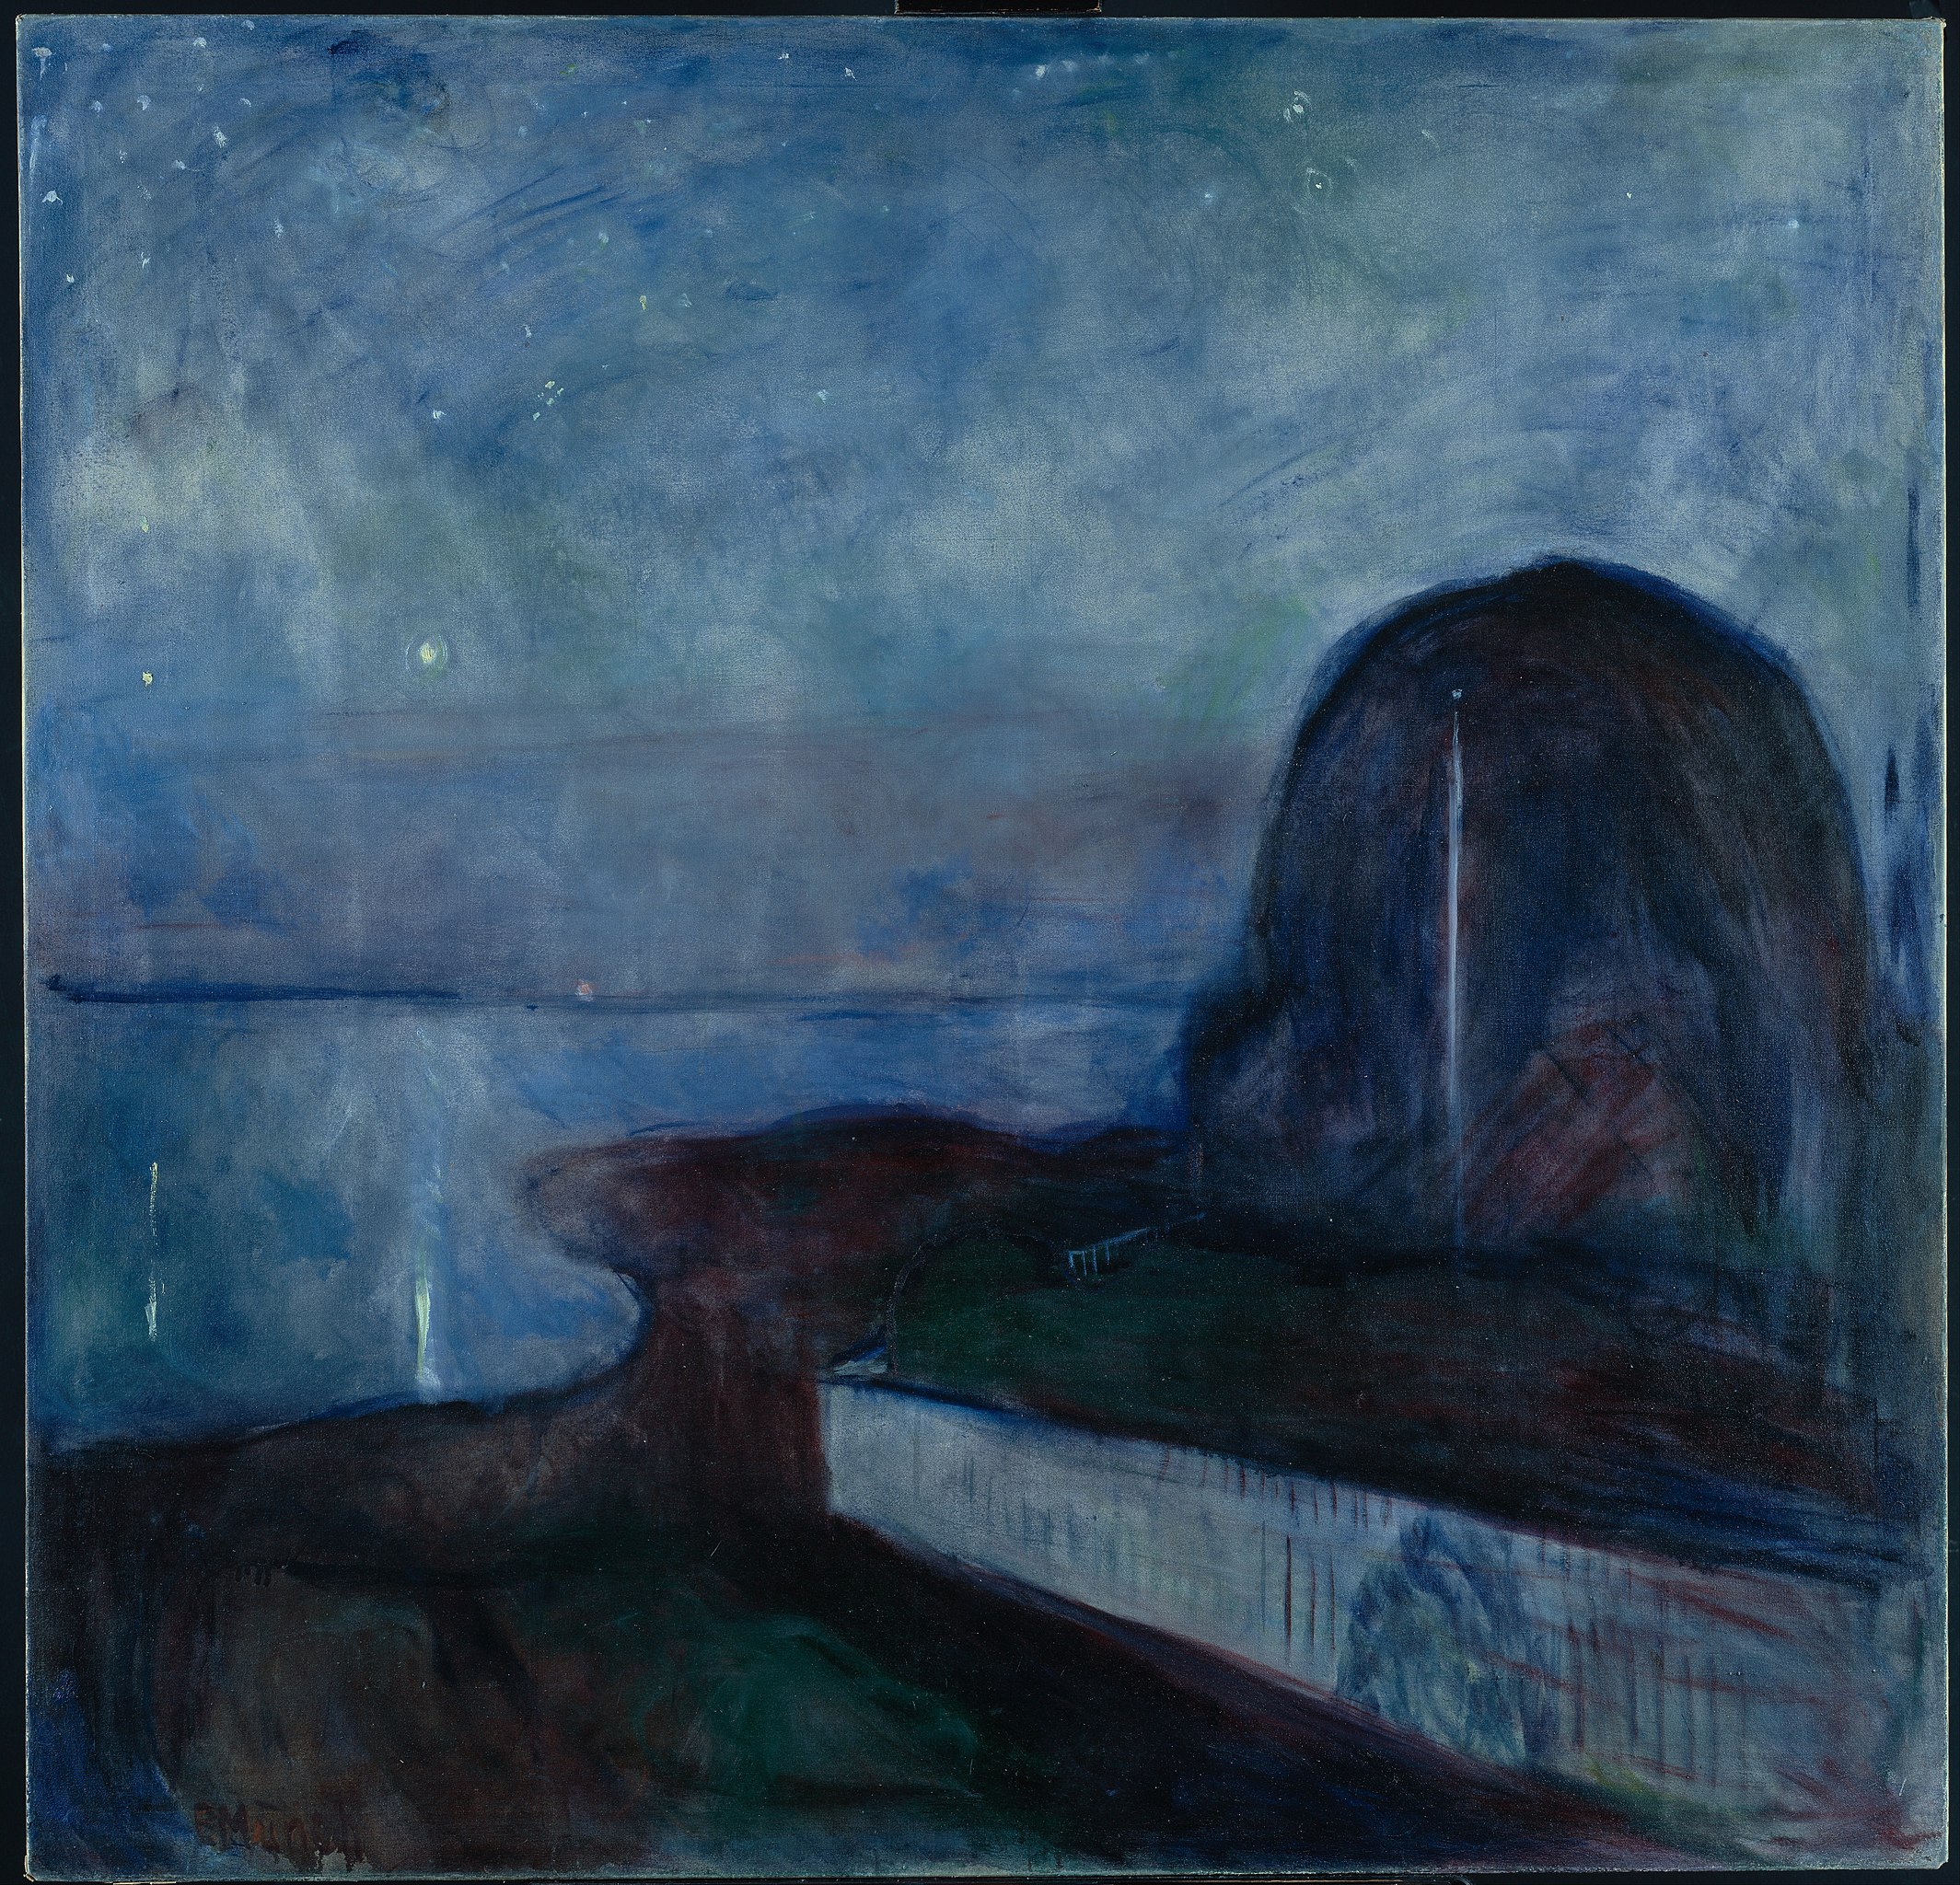 ファイル:'Starry Night' by Edvard Munch, 1893, Getty Center.JPG 